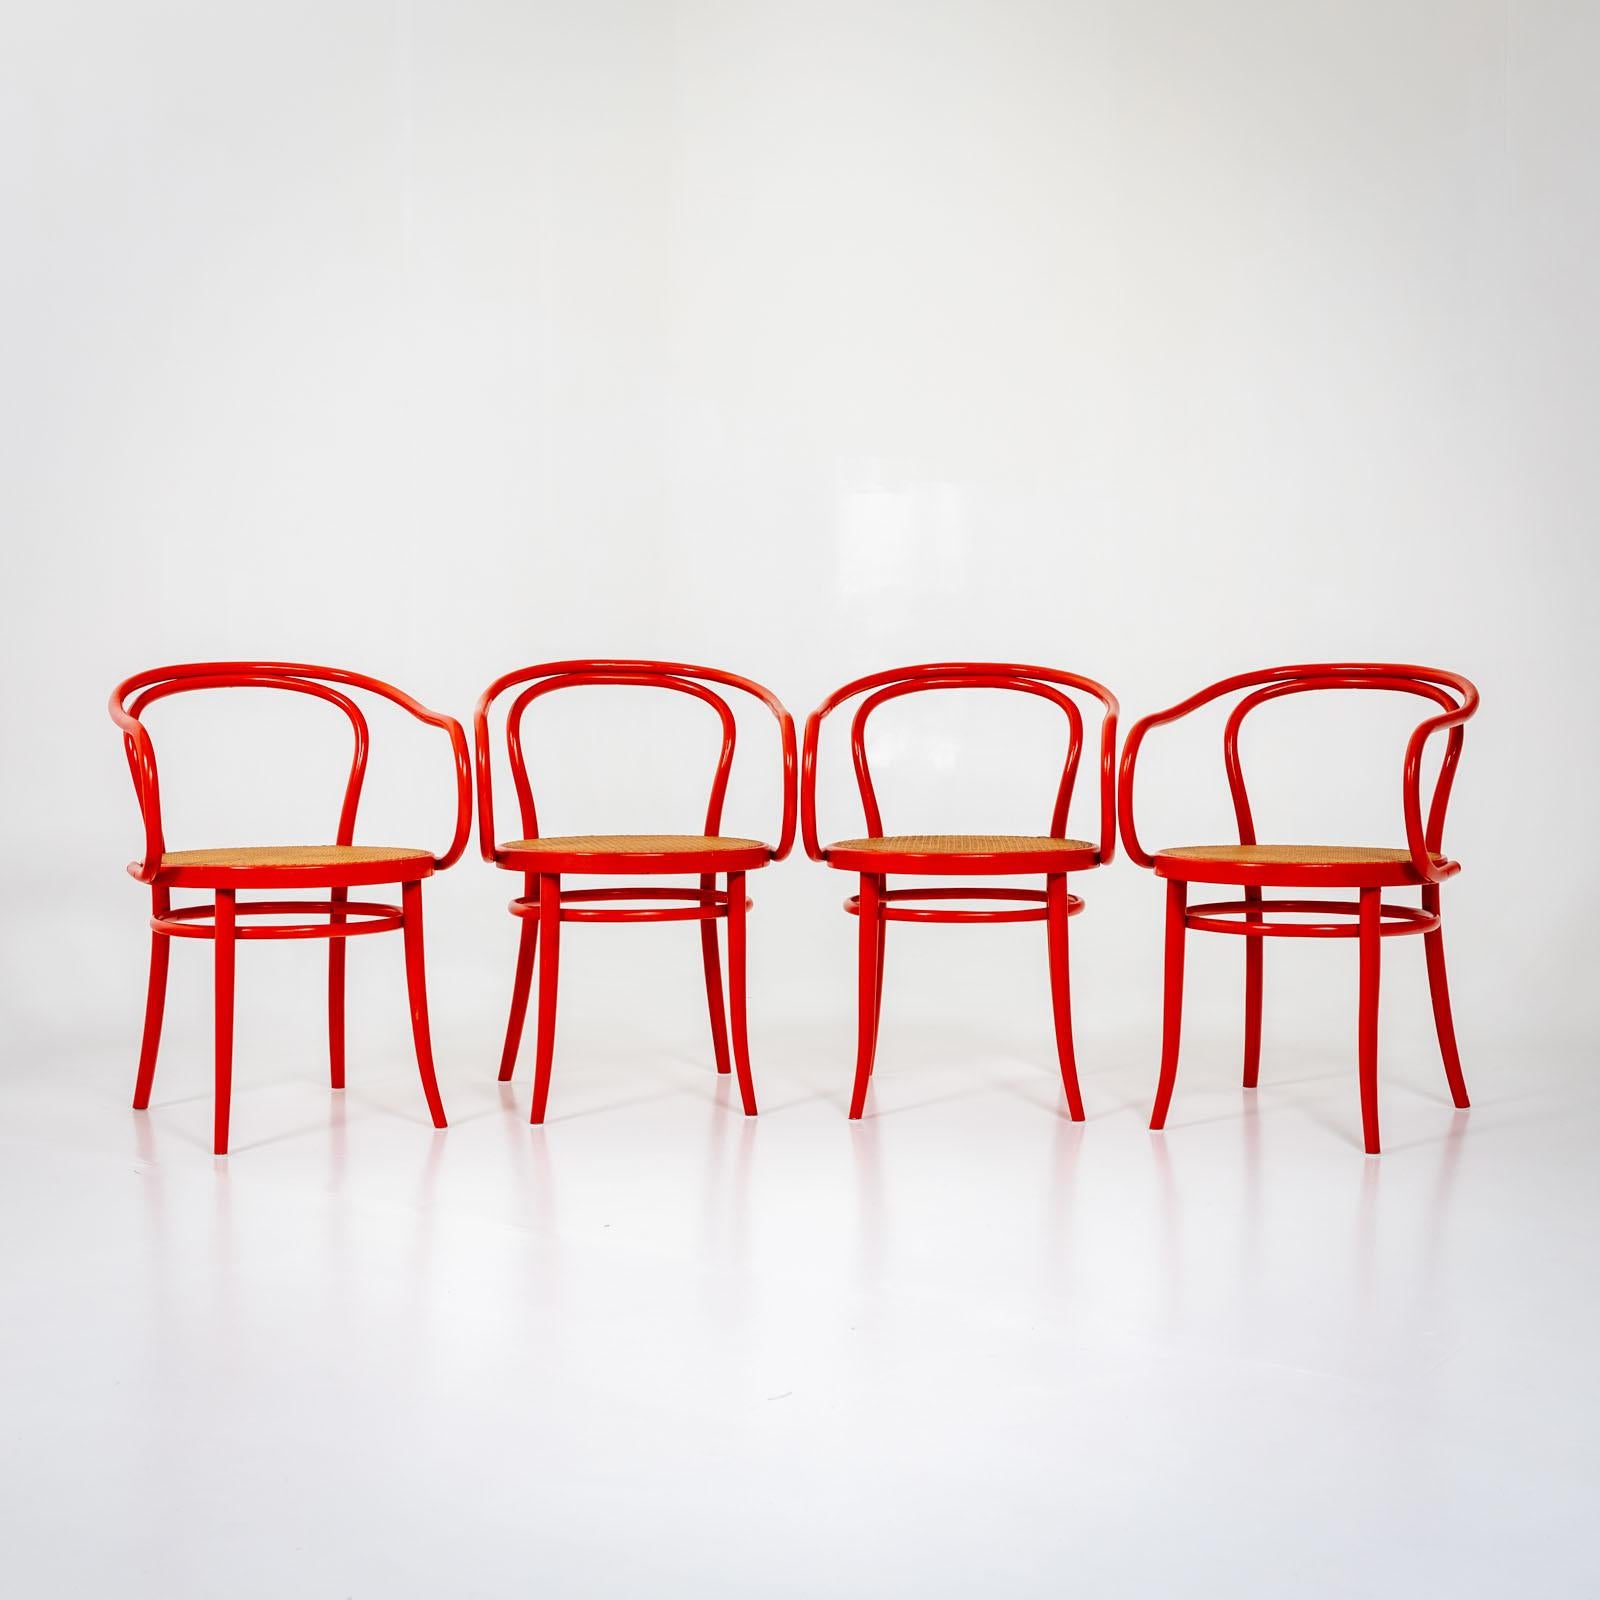 Satz von vier roten Bugholzstühlen von Drevounia, ehemals Tschechoslowakei. Die Stühle sind im Stil von Thonet gestaltet. Die Sitze sind mit Wiener Flechtwerk bezogen. Label auf der Unterseite: 